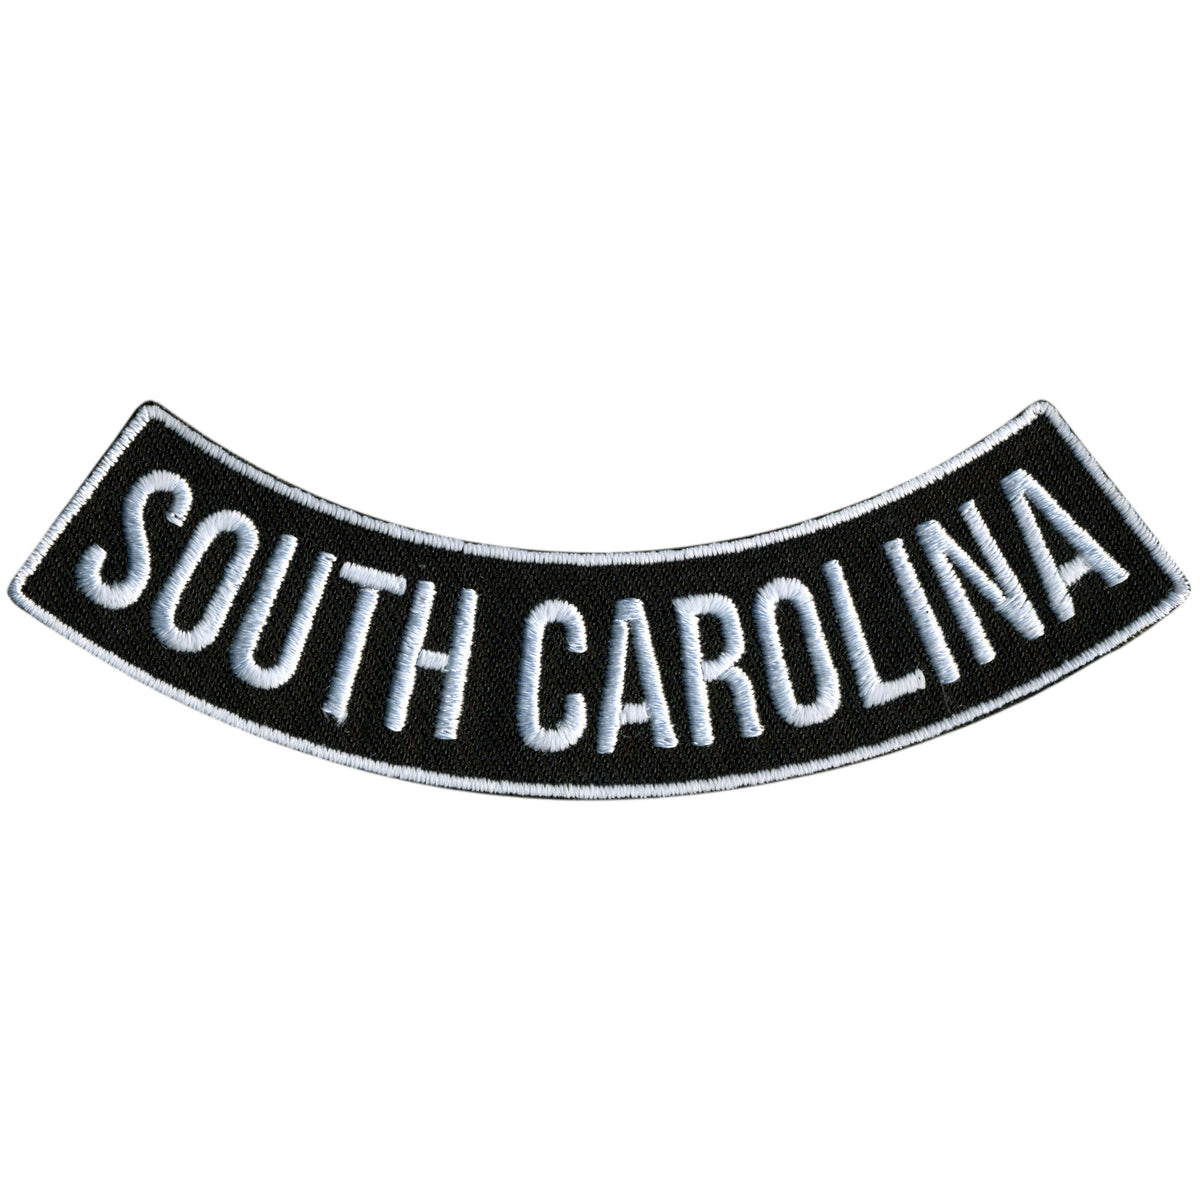 Hot Leathers South Carolina 4” X 1” Bottom Rocker Patch